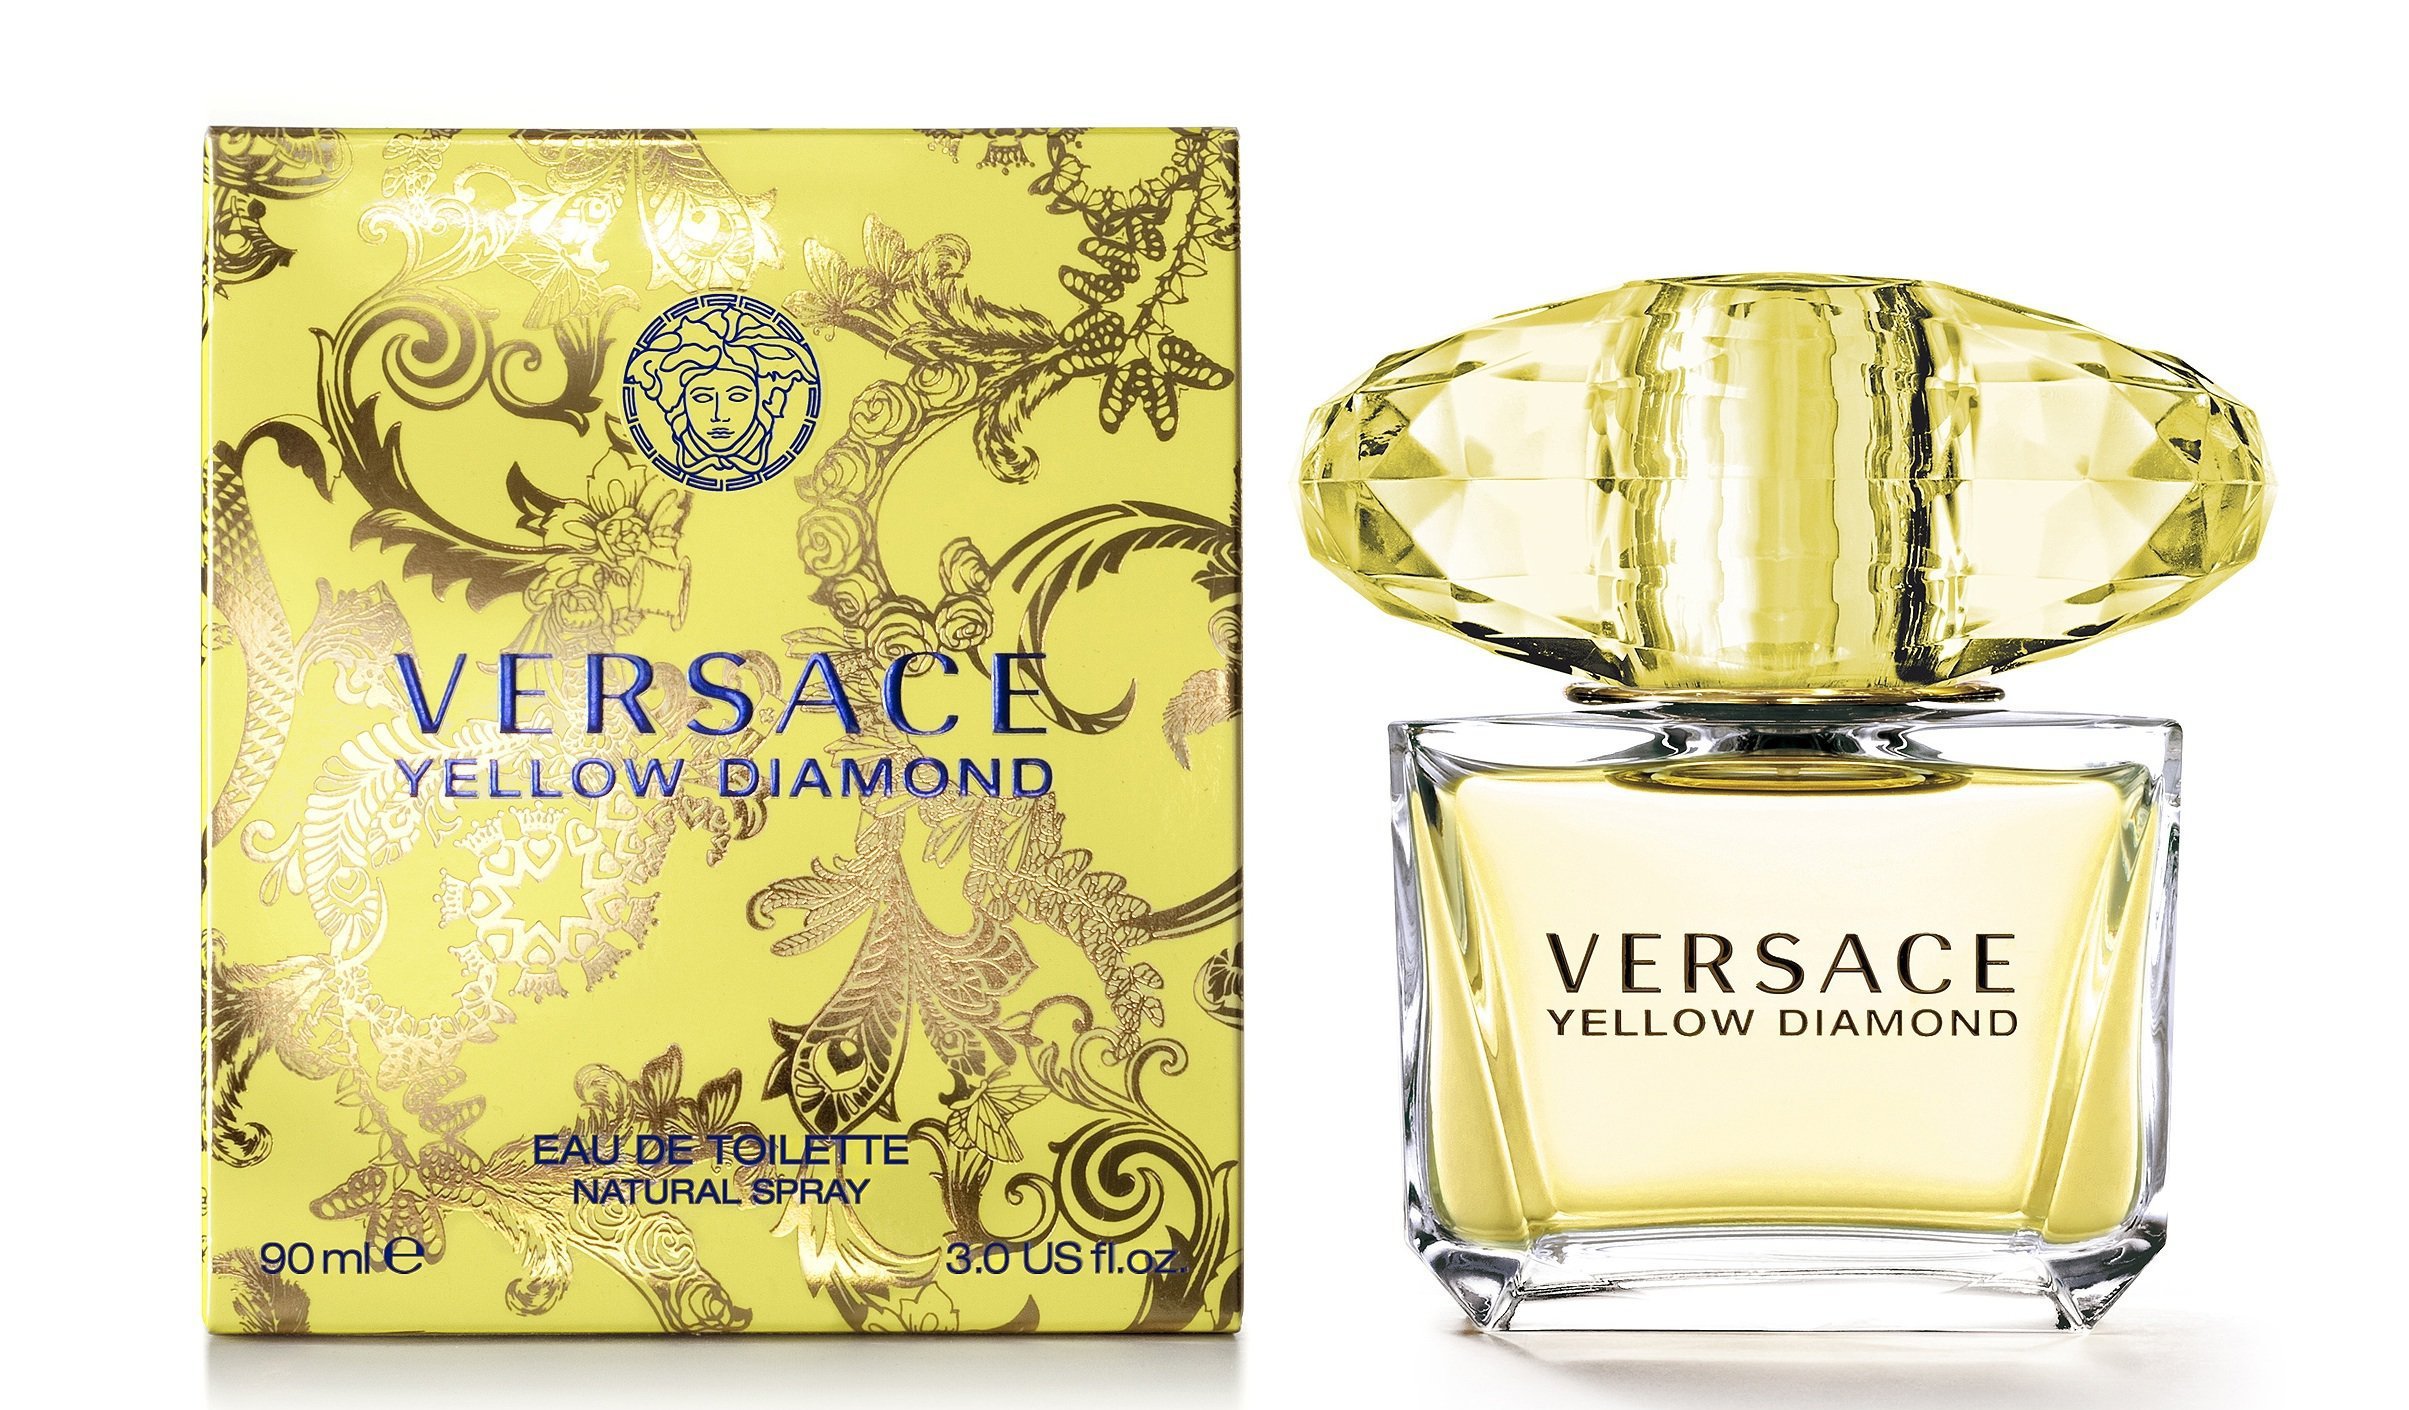 Купить Туалетная вода Versace, Versace Yellow Diamond 5ml, Италия